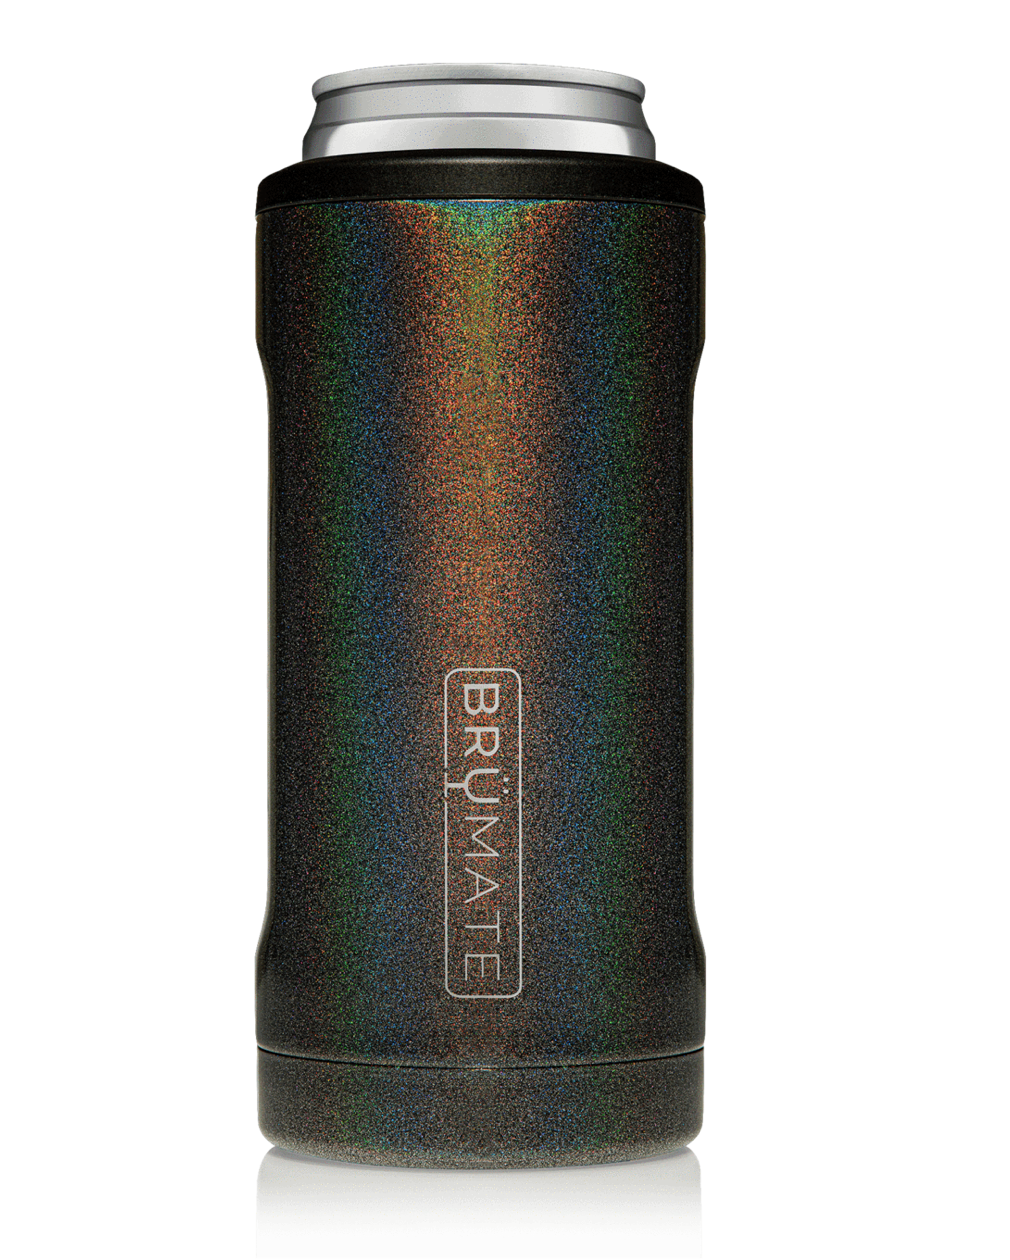 BruMate Glitter Charcoal Hopsulator Bott'l